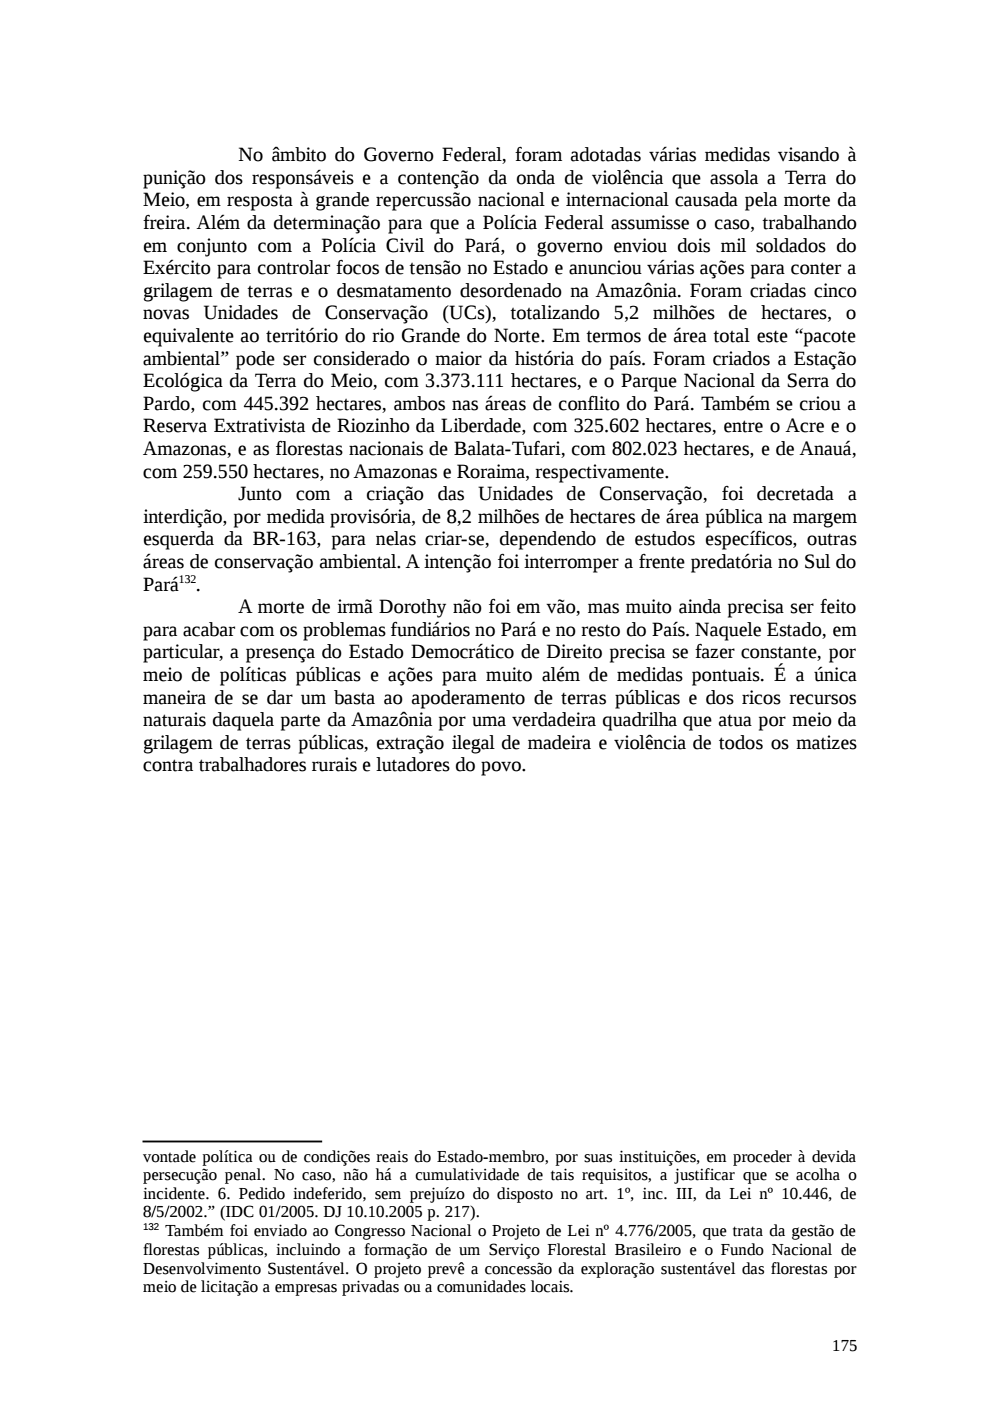 Page 175 from Relatório final da comissão